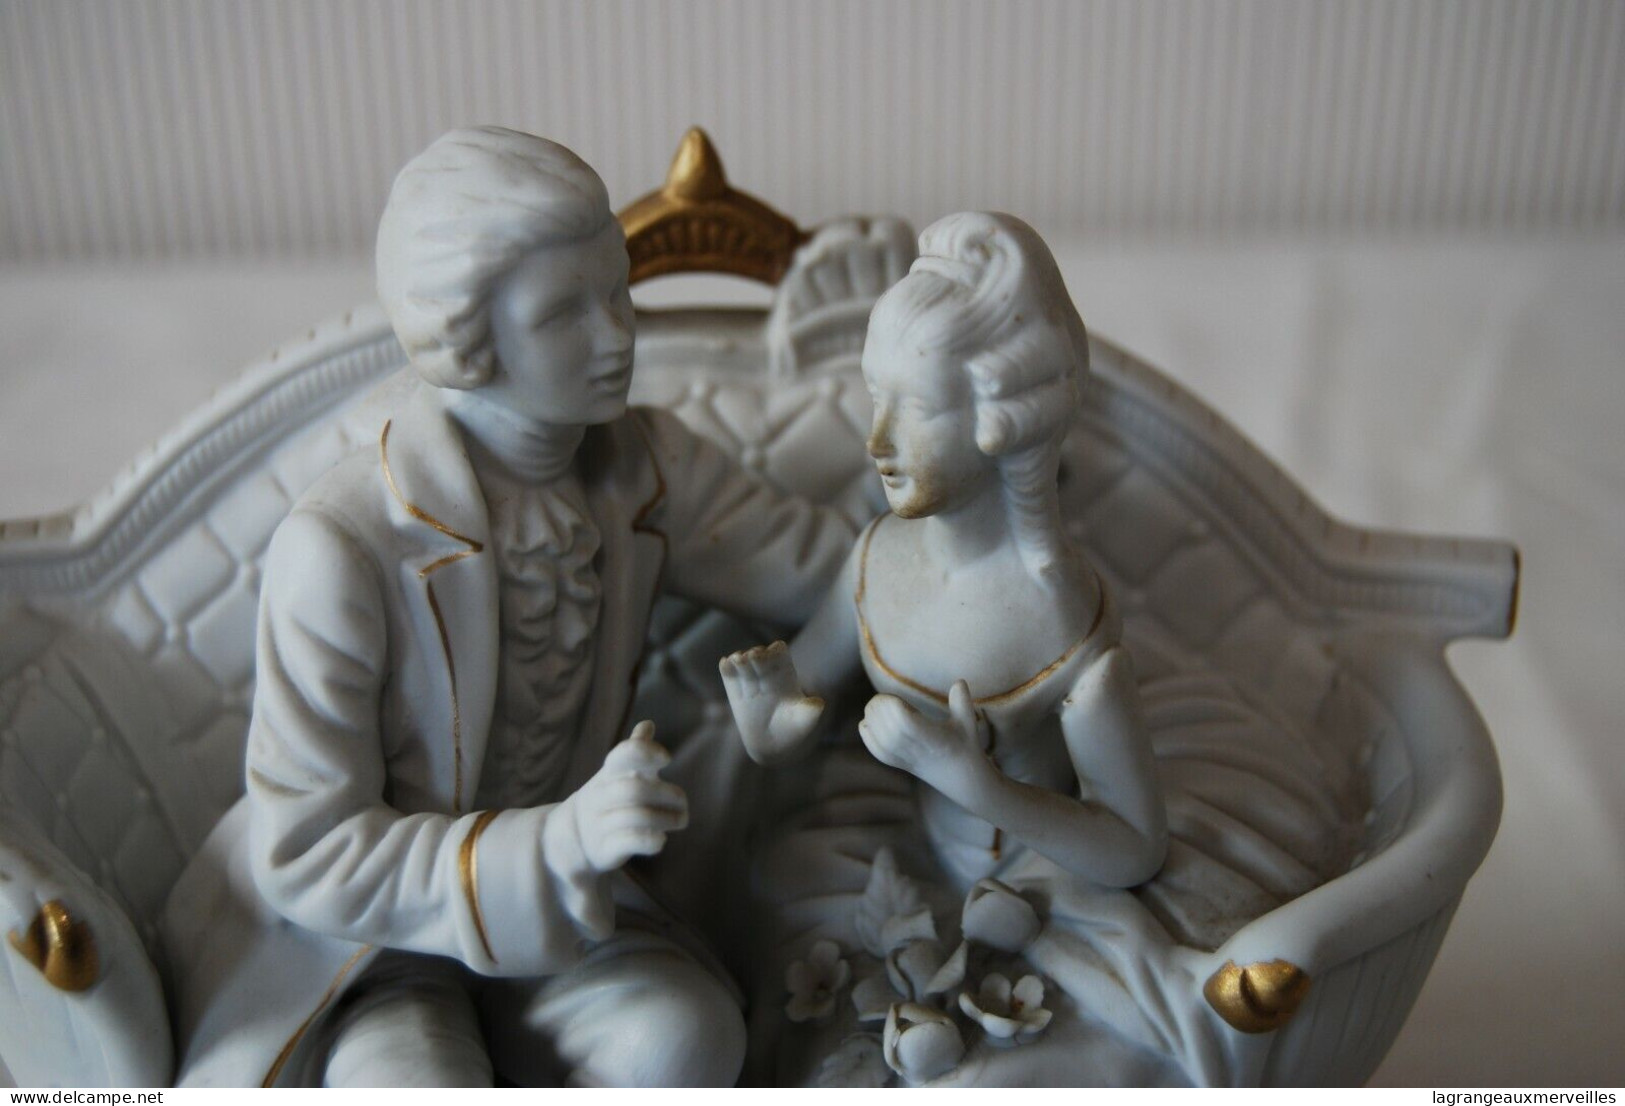 E1 Objet de vitrine - Le couple romantique - porcelaine biscuit - pate blanche